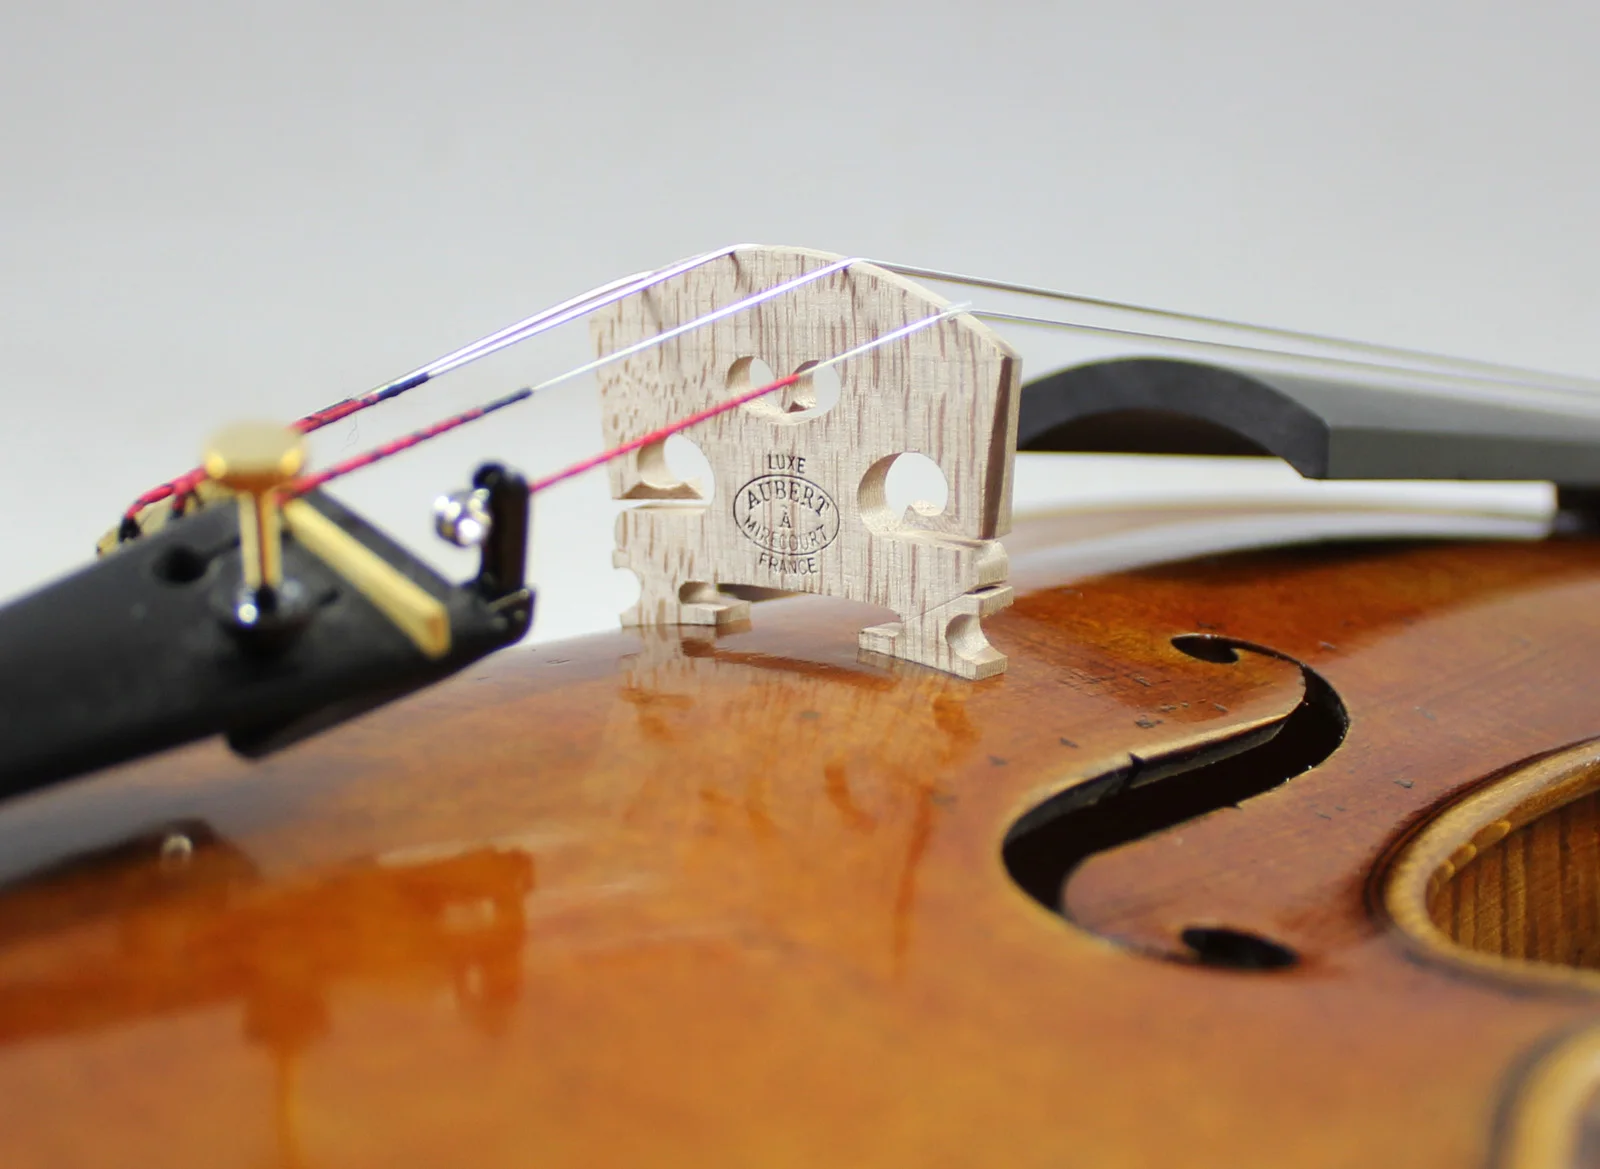 Ель 60-ти лет! потрясающая 1 шт. назад! Скрипка для почвы от Antonio Stradivari 4/4 скрипка o копия, вся Европейская древесина